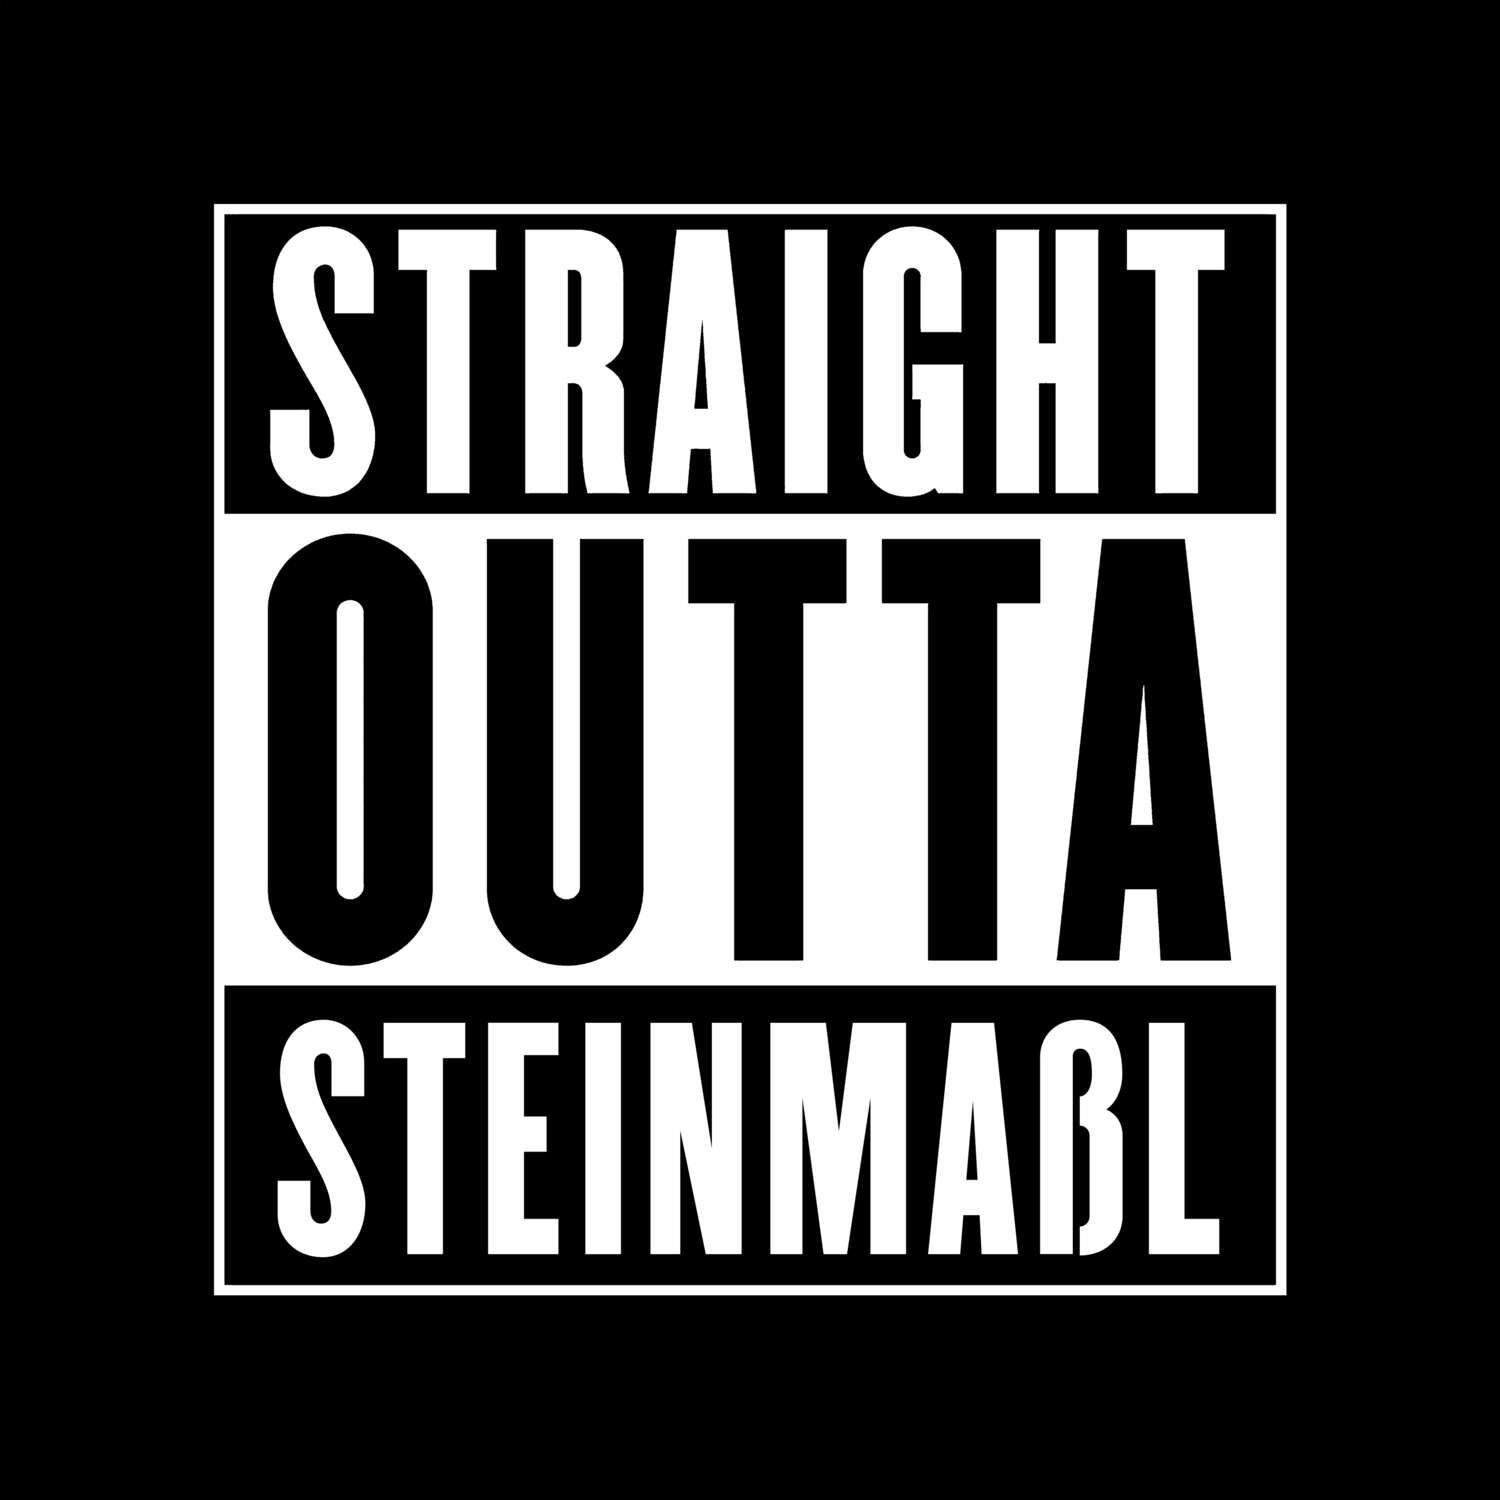 Steinmaßl T-Shirt »Straight Outta«